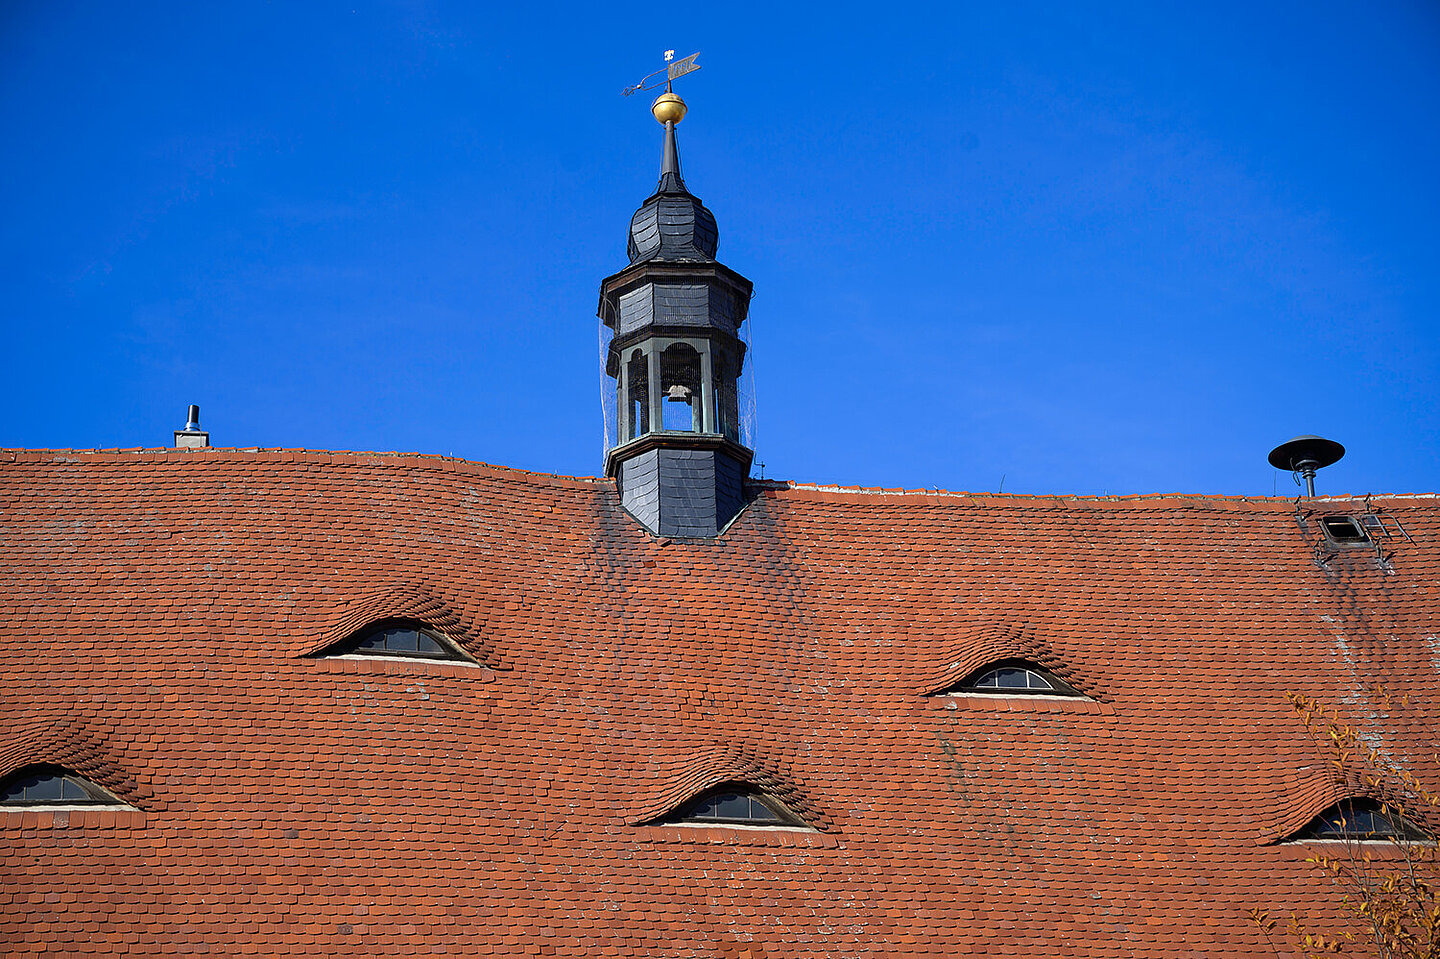 Glockenturm vom Buttstädter Rathaus. Dieser sitzt auf einem roten Dach mit kleinen Fenstern. In einer Ecke ist eine Alarmsirene montiert.